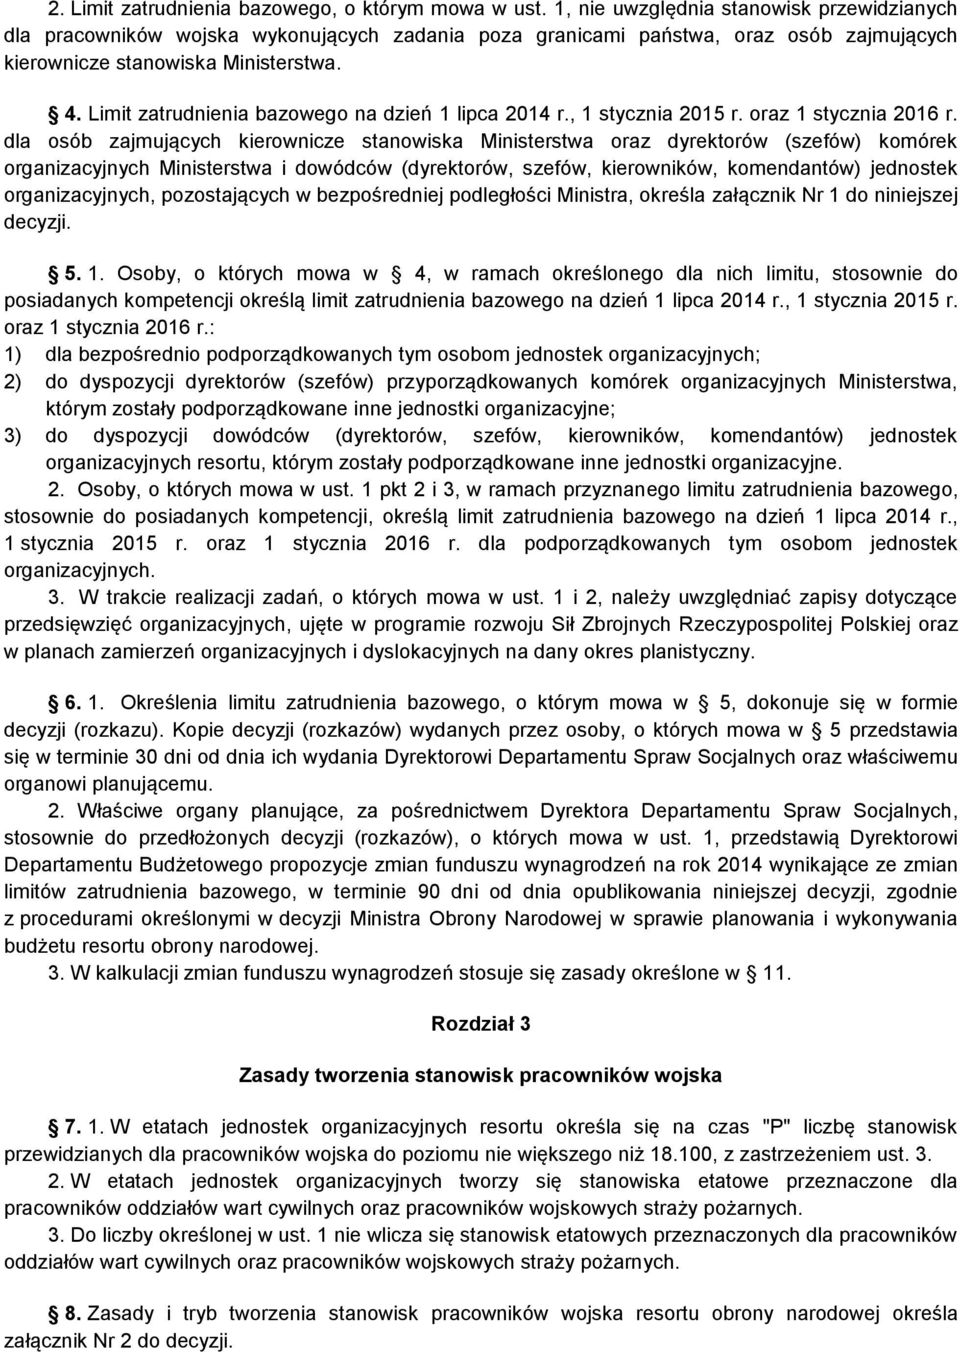 Limit zatrudnienia bazowego na dzień 1 lipca 2014 r., 1 stycznia 2015 r. oraz 1 stycznia 2016 r.